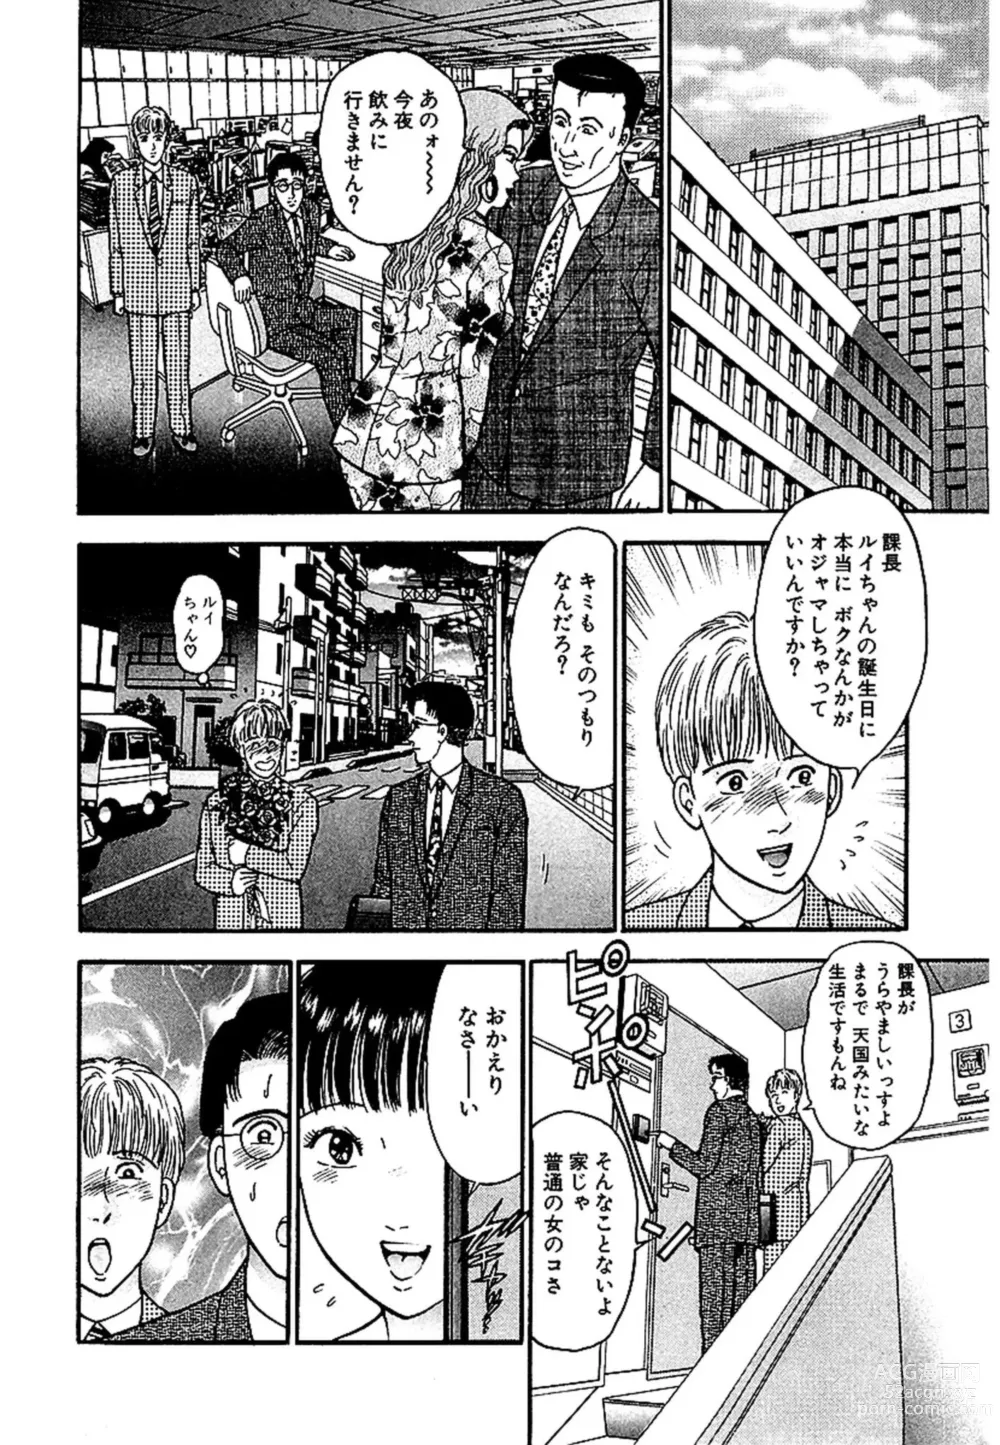 Page 23 of manga Sekkusuresu Shinsō-ban 1